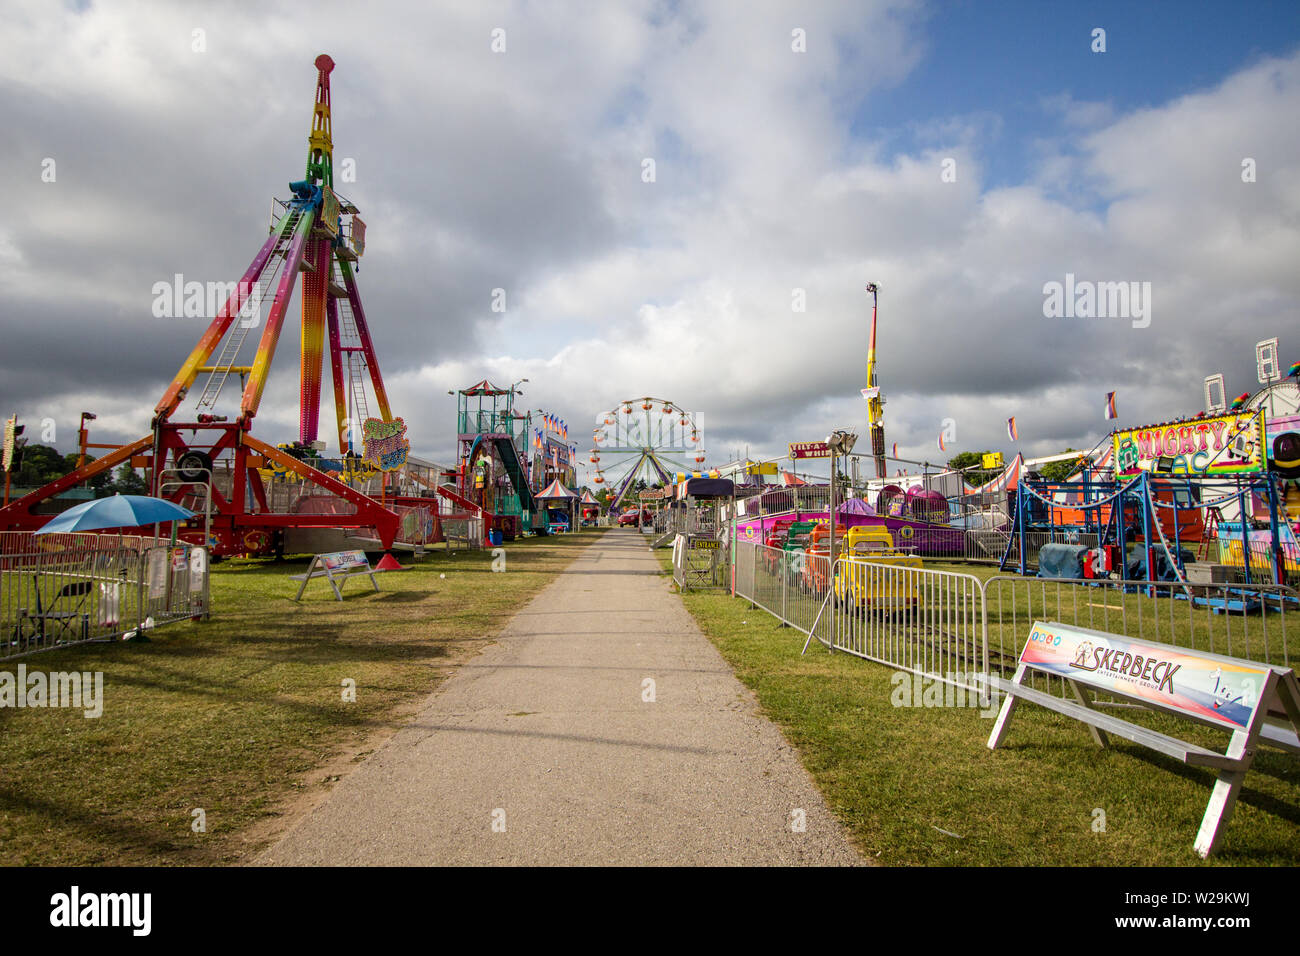 Cheboygan, Michigan, USA - Midway einer County Fair während eines Sommerfestivals im Mittleren Westen der Vereinigten Staaten. Stockfoto